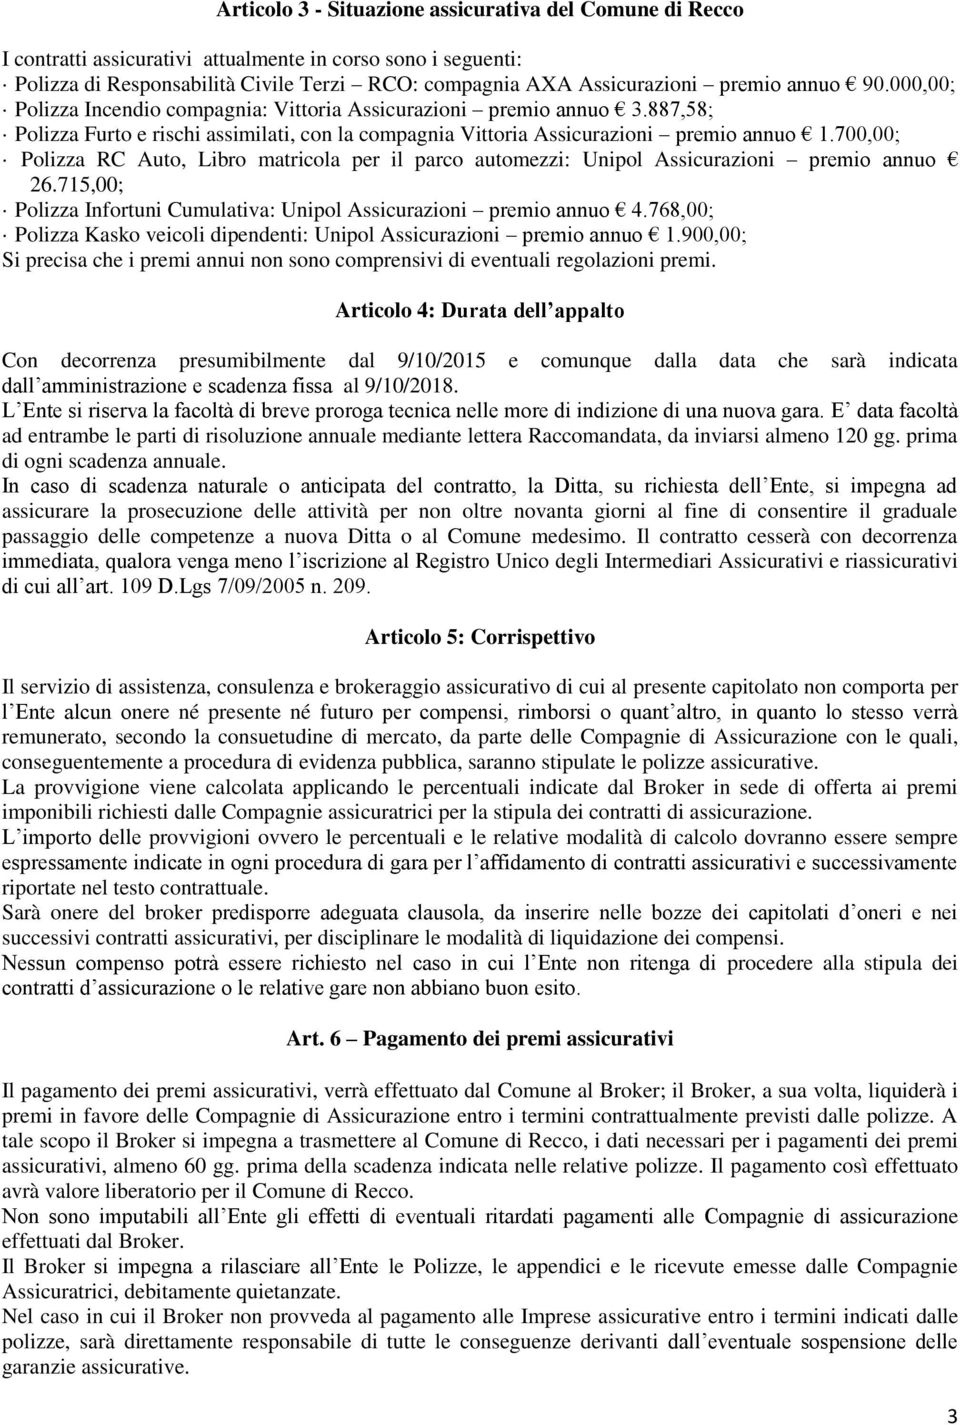 700,00; Polizza RC Auto, Libro matricola per il parco automezzi: Unipol Assicurazioni premio annuo 26.715,00; Polizza Infortuni Cumulativa: Unipol Assicurazioni premio annuo 4.